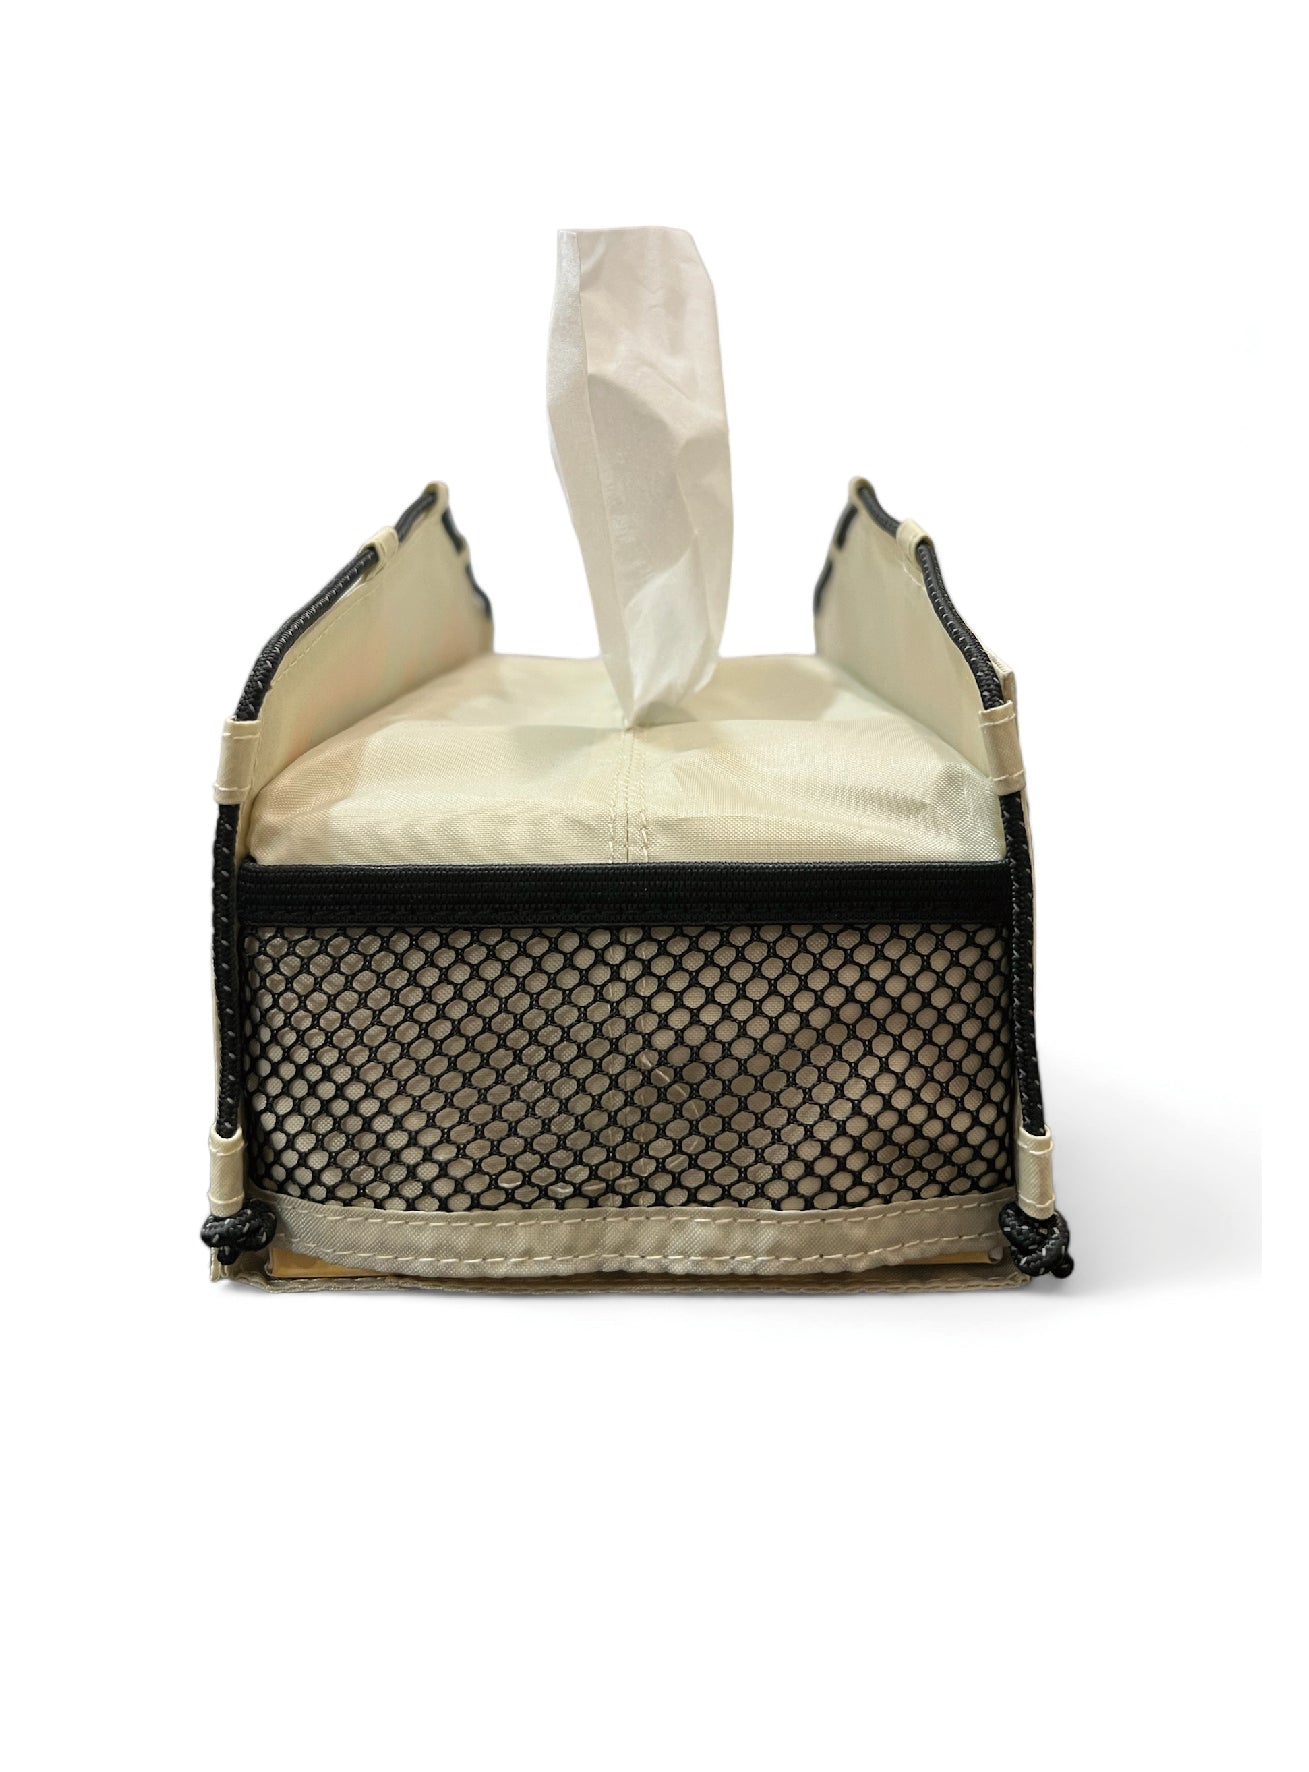 Tenty Tissue box 帳篷型紙巾盒 露營設計特色 環保物料製造